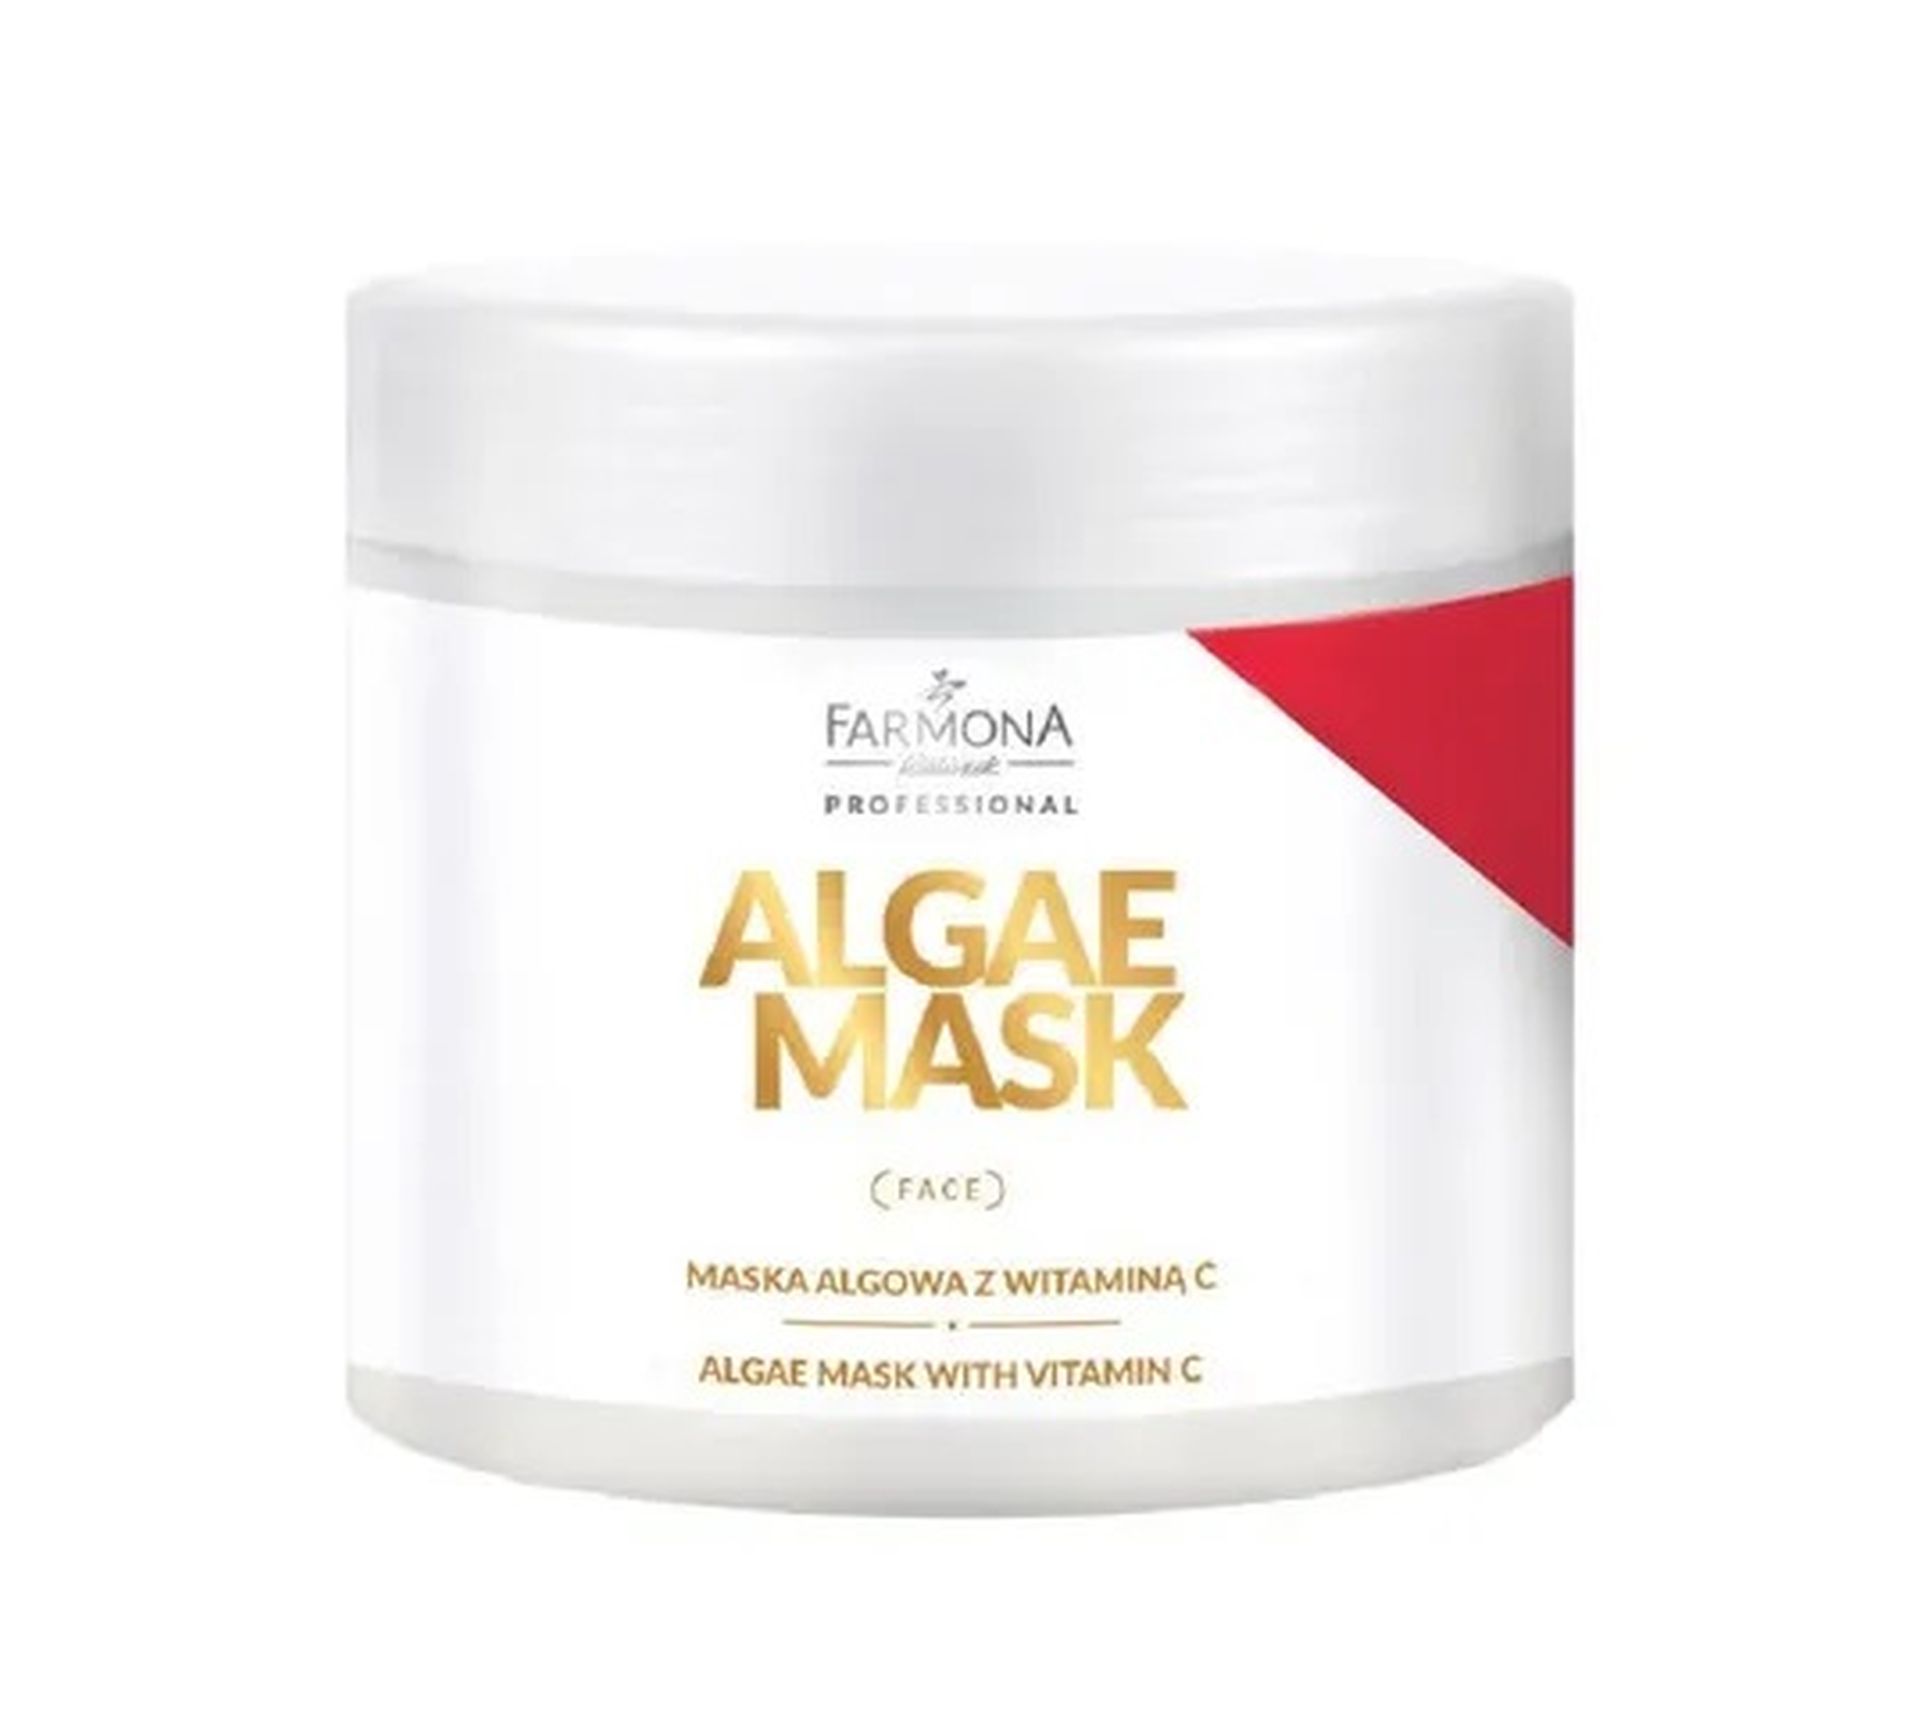 Farmona Professional – Algae Mask maska algowa z witaminą C (500 ml)